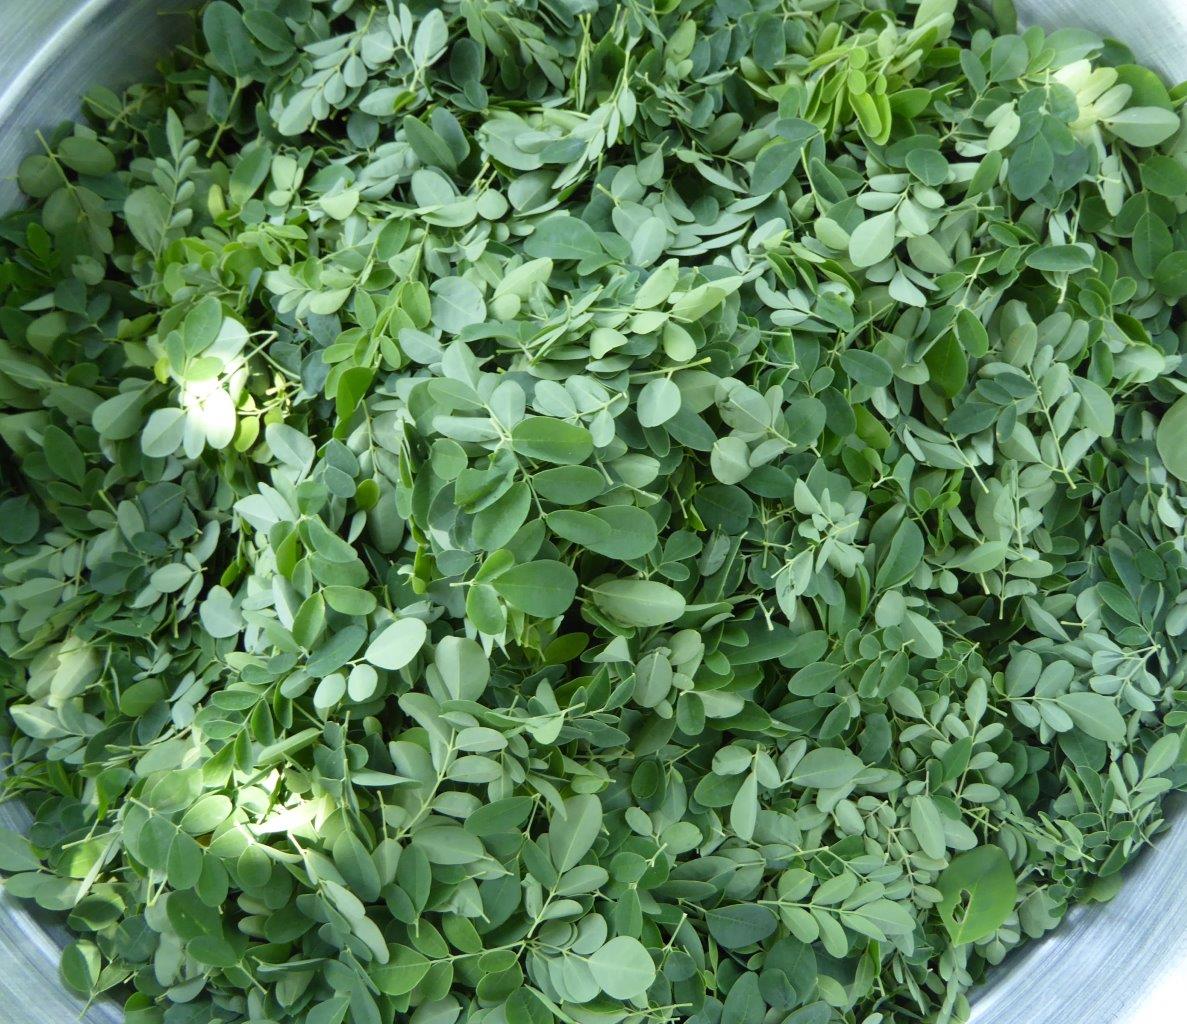 Moringa leaves for moringa sauce